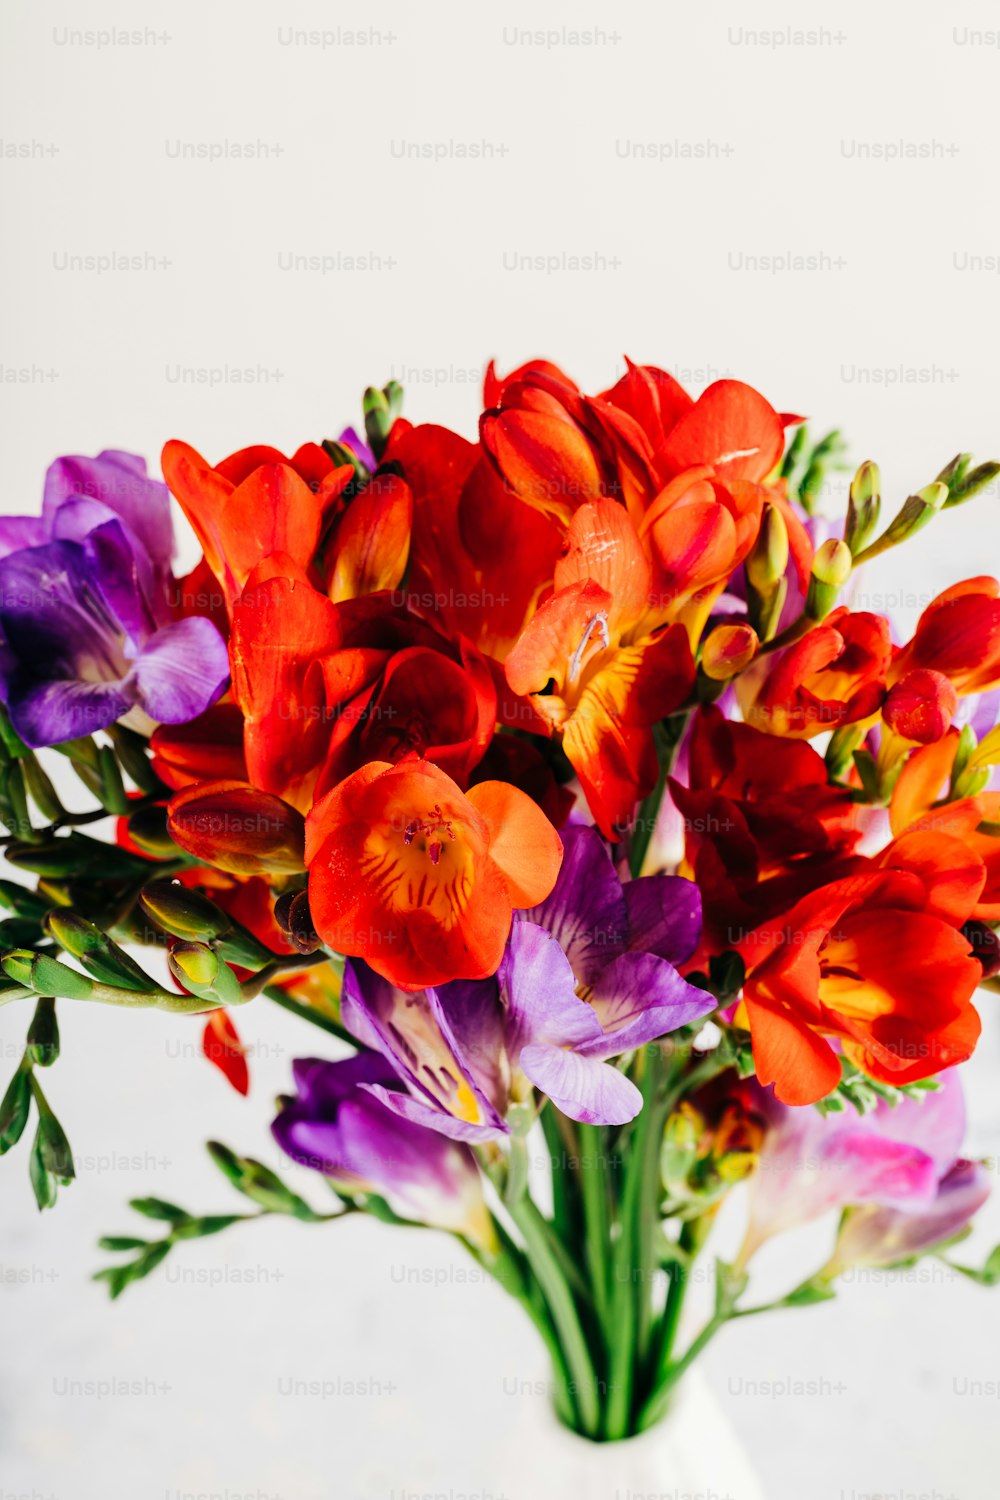 Un vase rempli de fleurs colorées sur une table